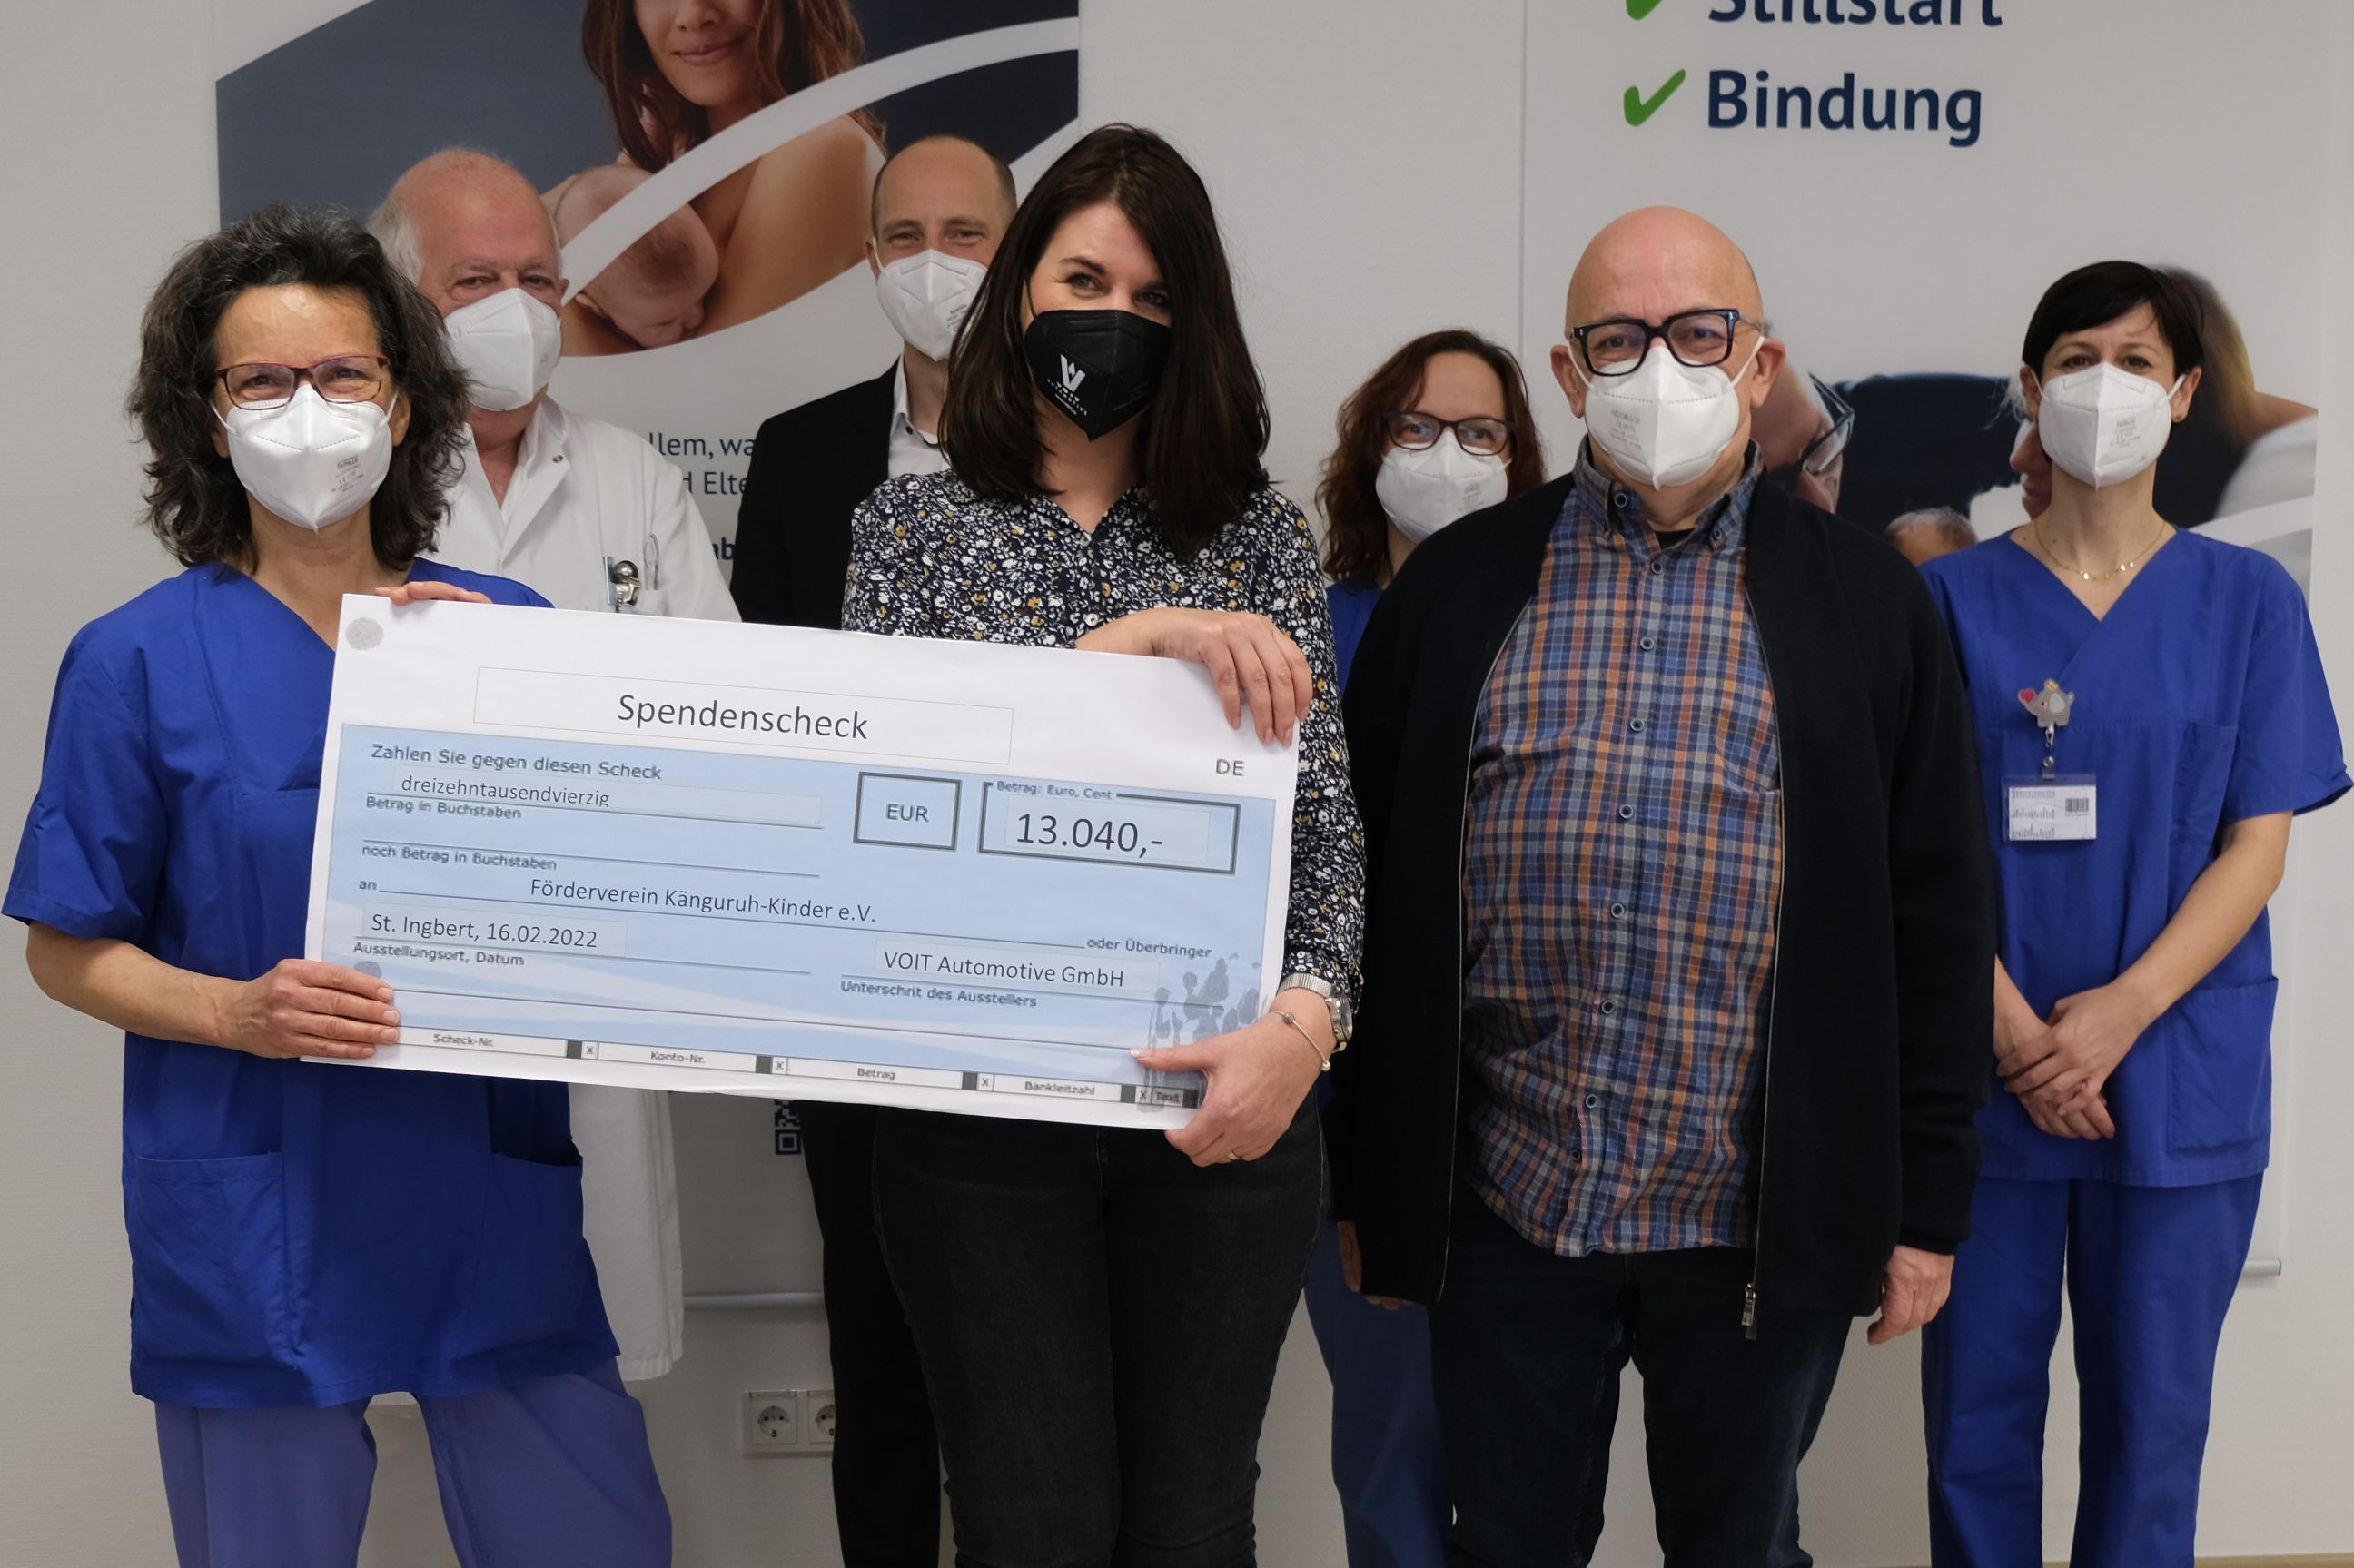 Mitarbeiter des Klinikums Saarbrücken und der Firma Voit mit Spendencheck für Känguruh Kinder e.V. auf dem Winterberg